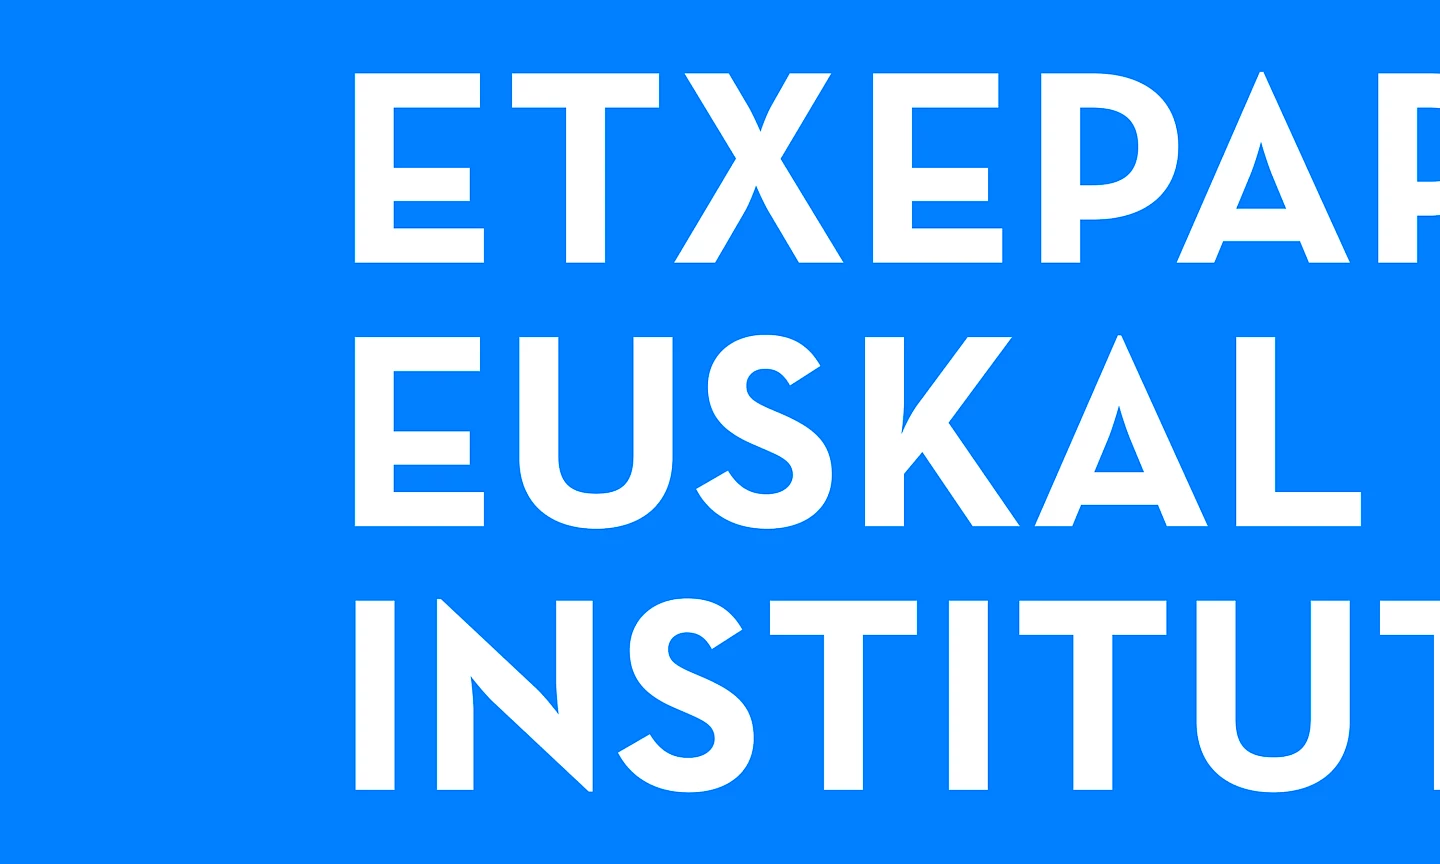 etxepare design digital branding 01 narrative move institutua header spaces 